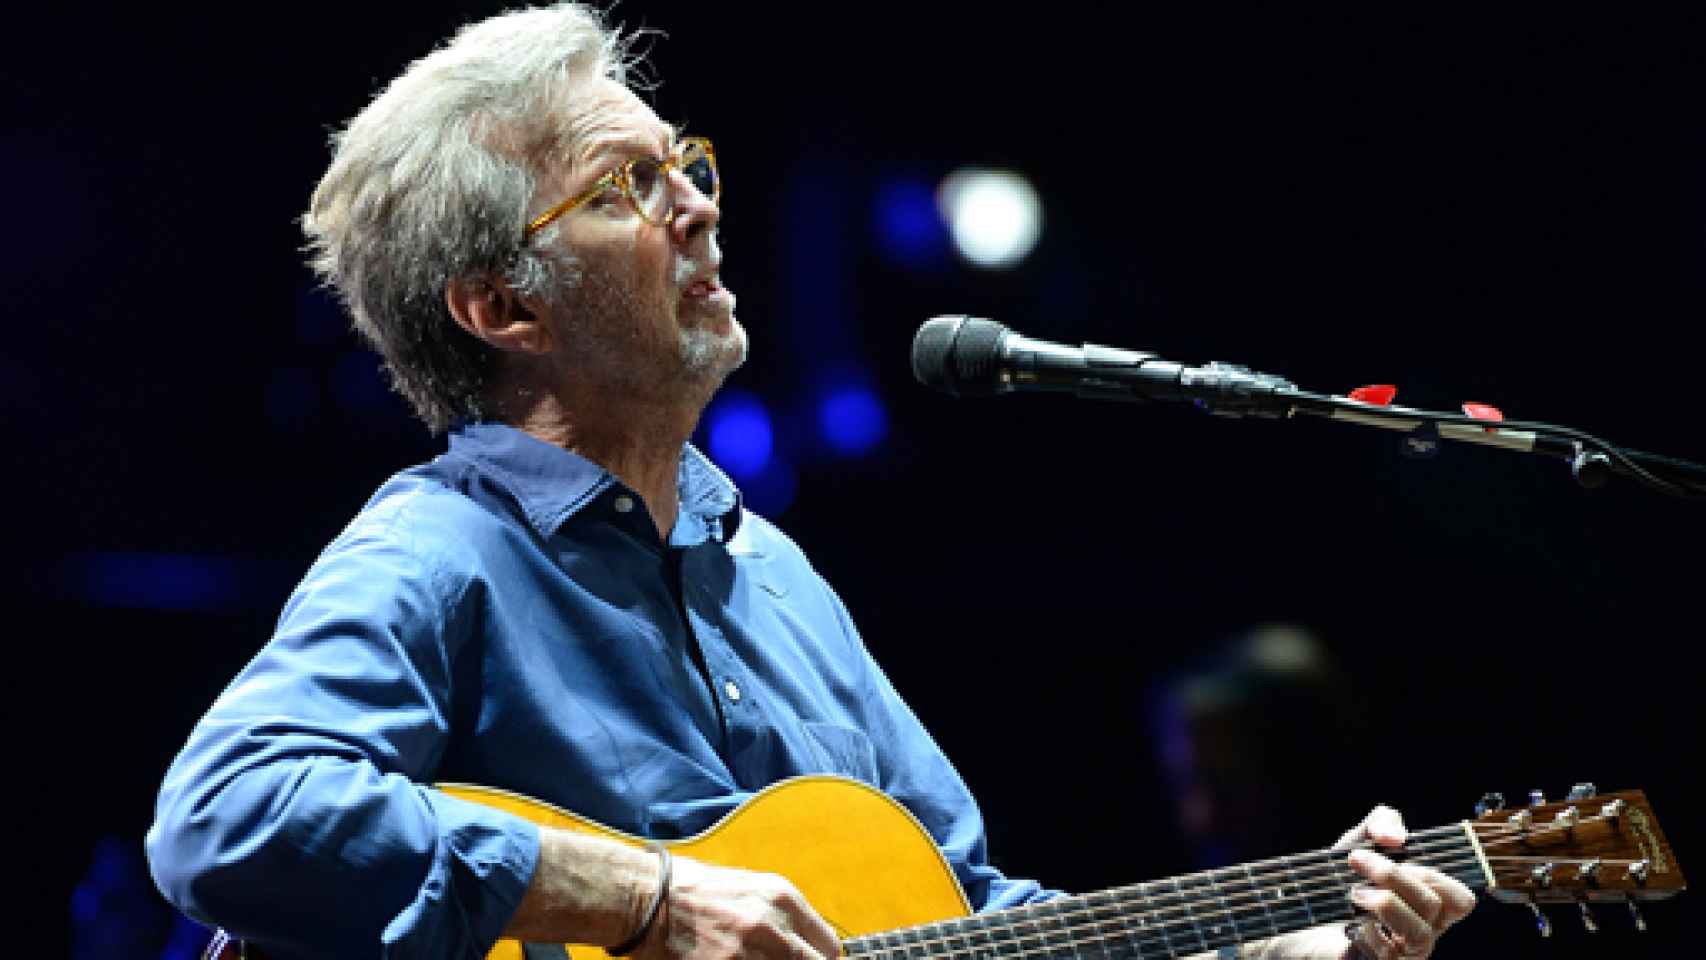 Image: El bicentenario de Eric Clapton